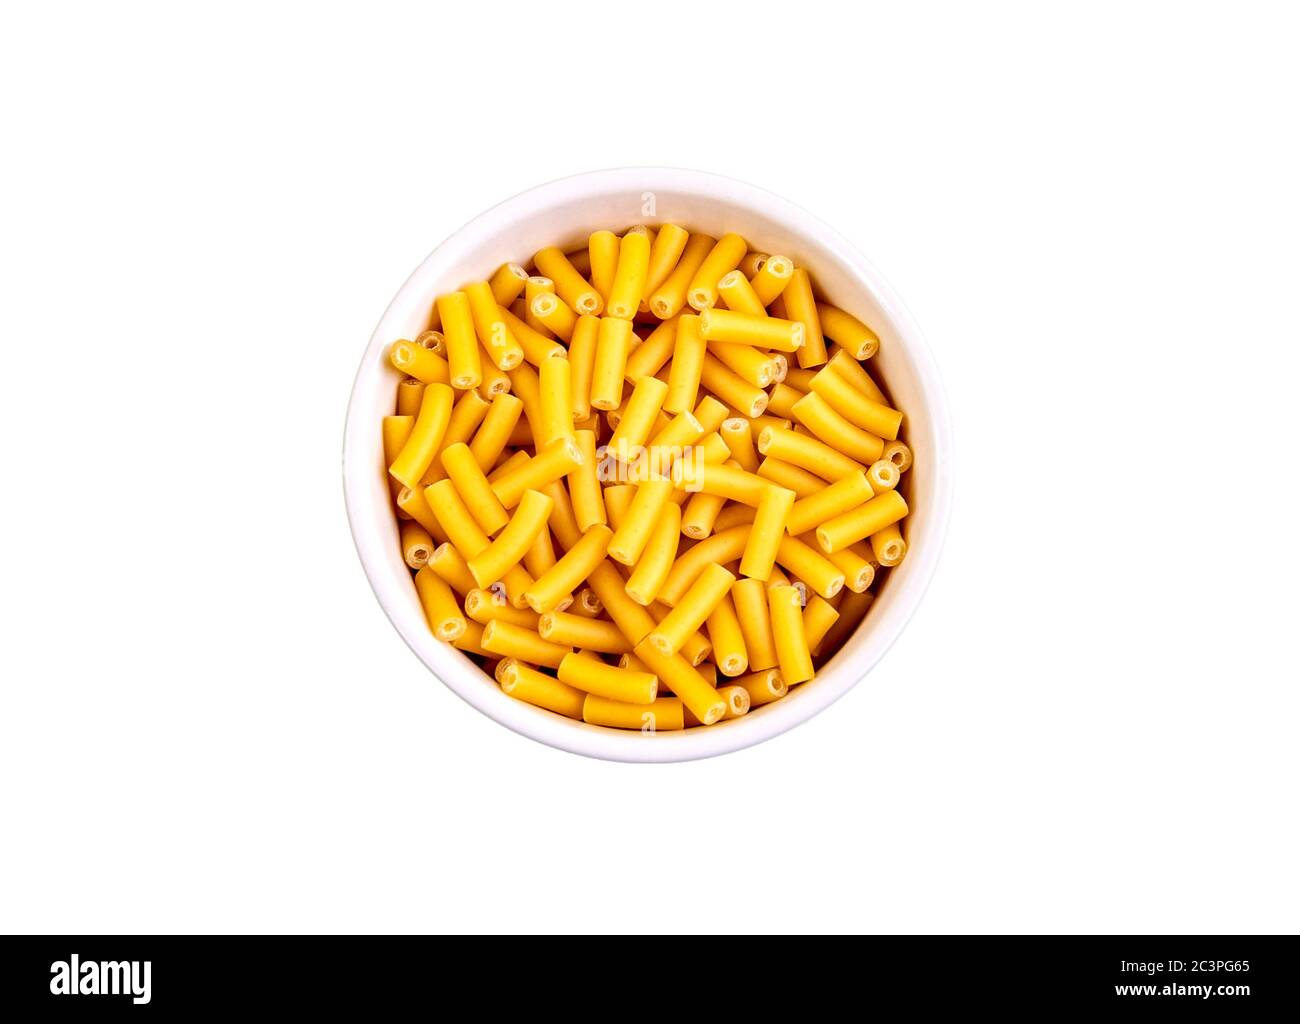 Bowl of macaroni, a dry pasta shaped like narrow tubes, made of durum wheat (Triticum durum) semolina Stock Photo